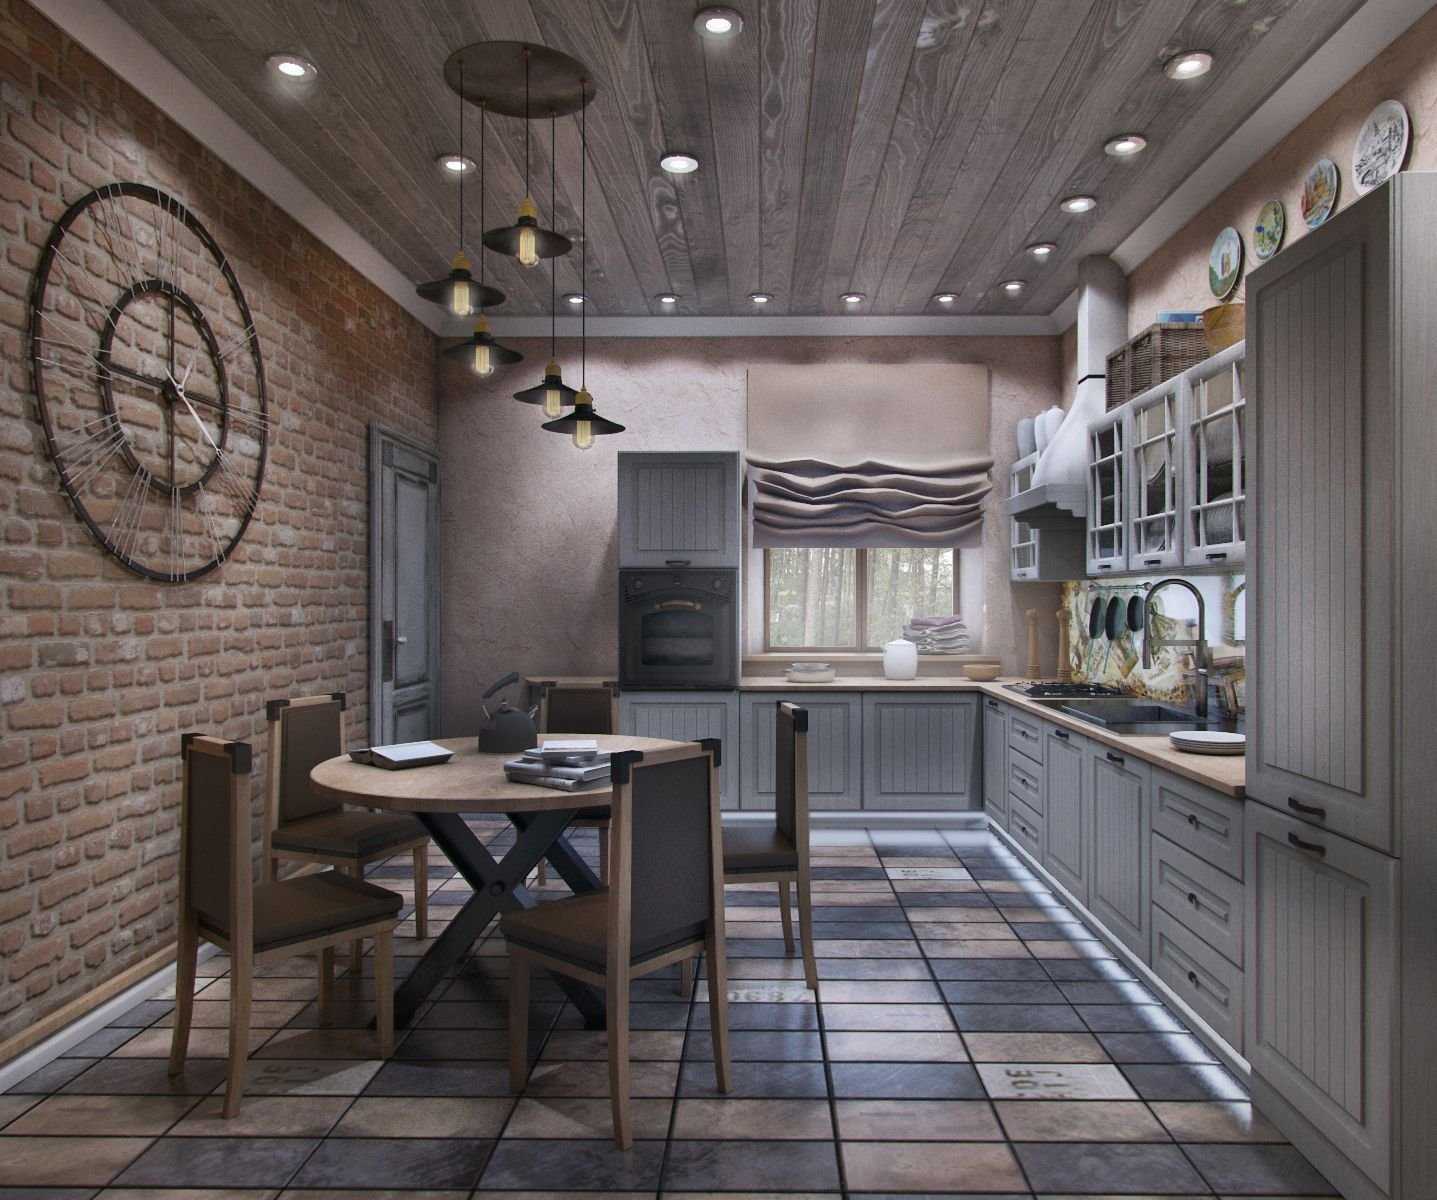 Кухня в стиле лофт: фото современного интерьера в квартире, дизайн с кирпичом, стол и стулья в столовую, зонирование диваном, шторы и люстры, барная стойка